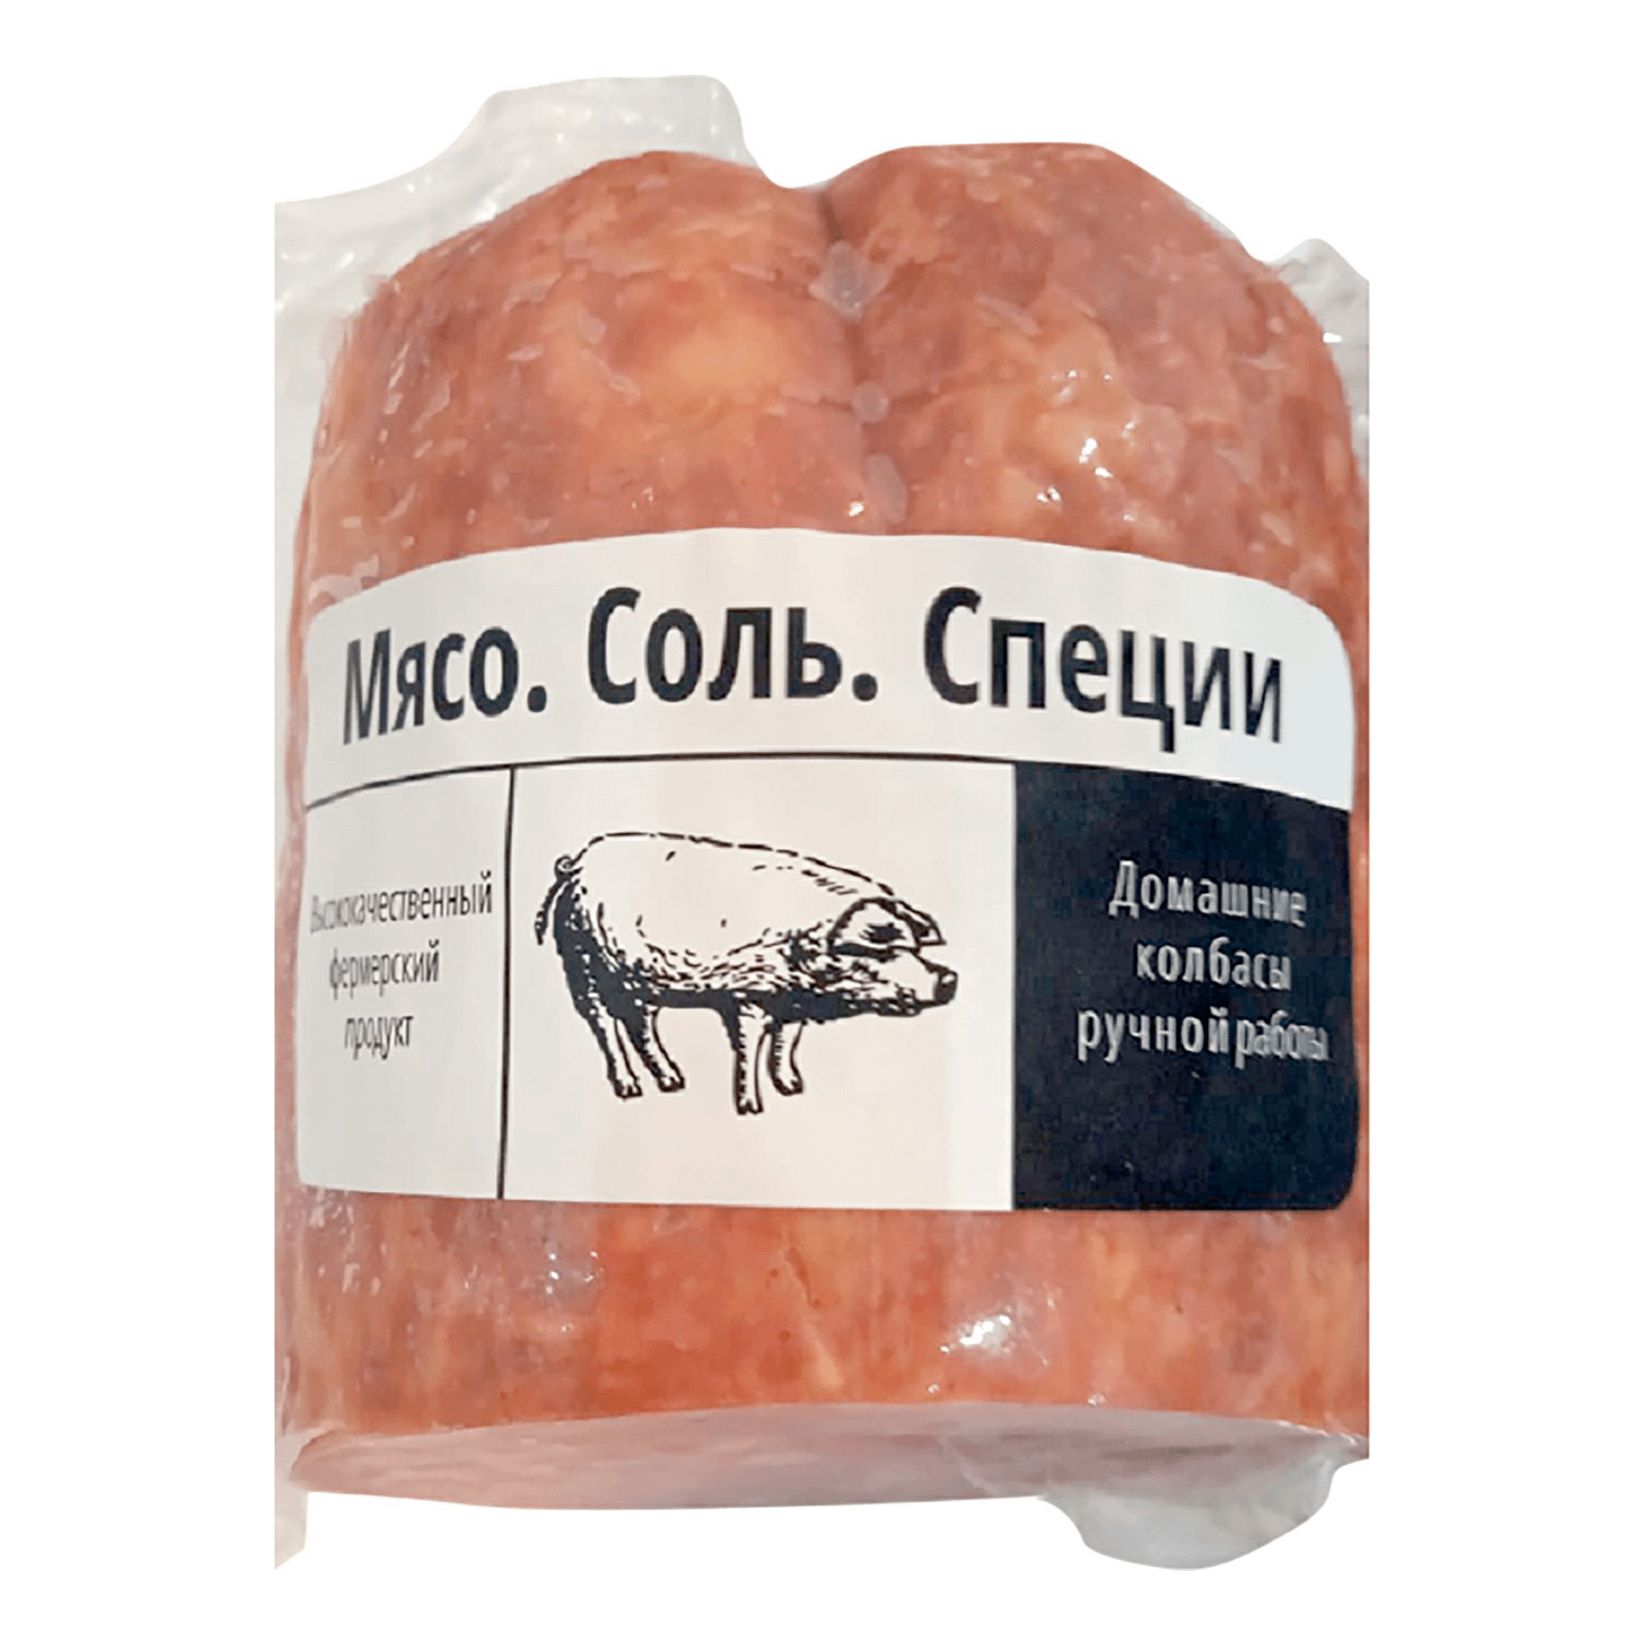 Колбаса варено-копченая Мясо.Соль.Специи Польская мини +-400 г